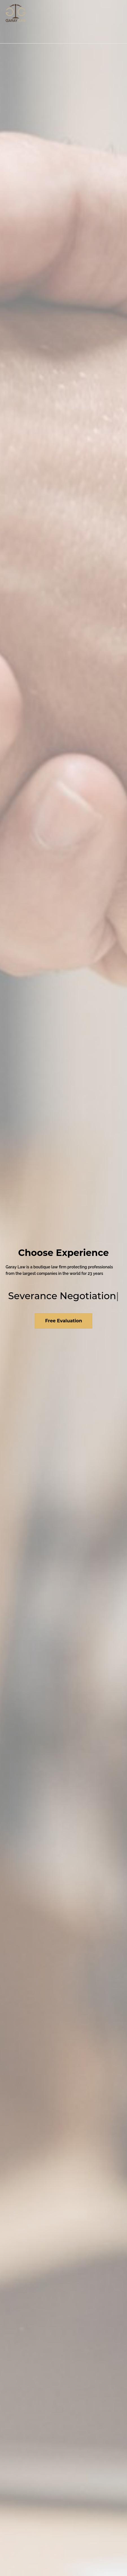 Garay Law - Irvine CA Lawyers